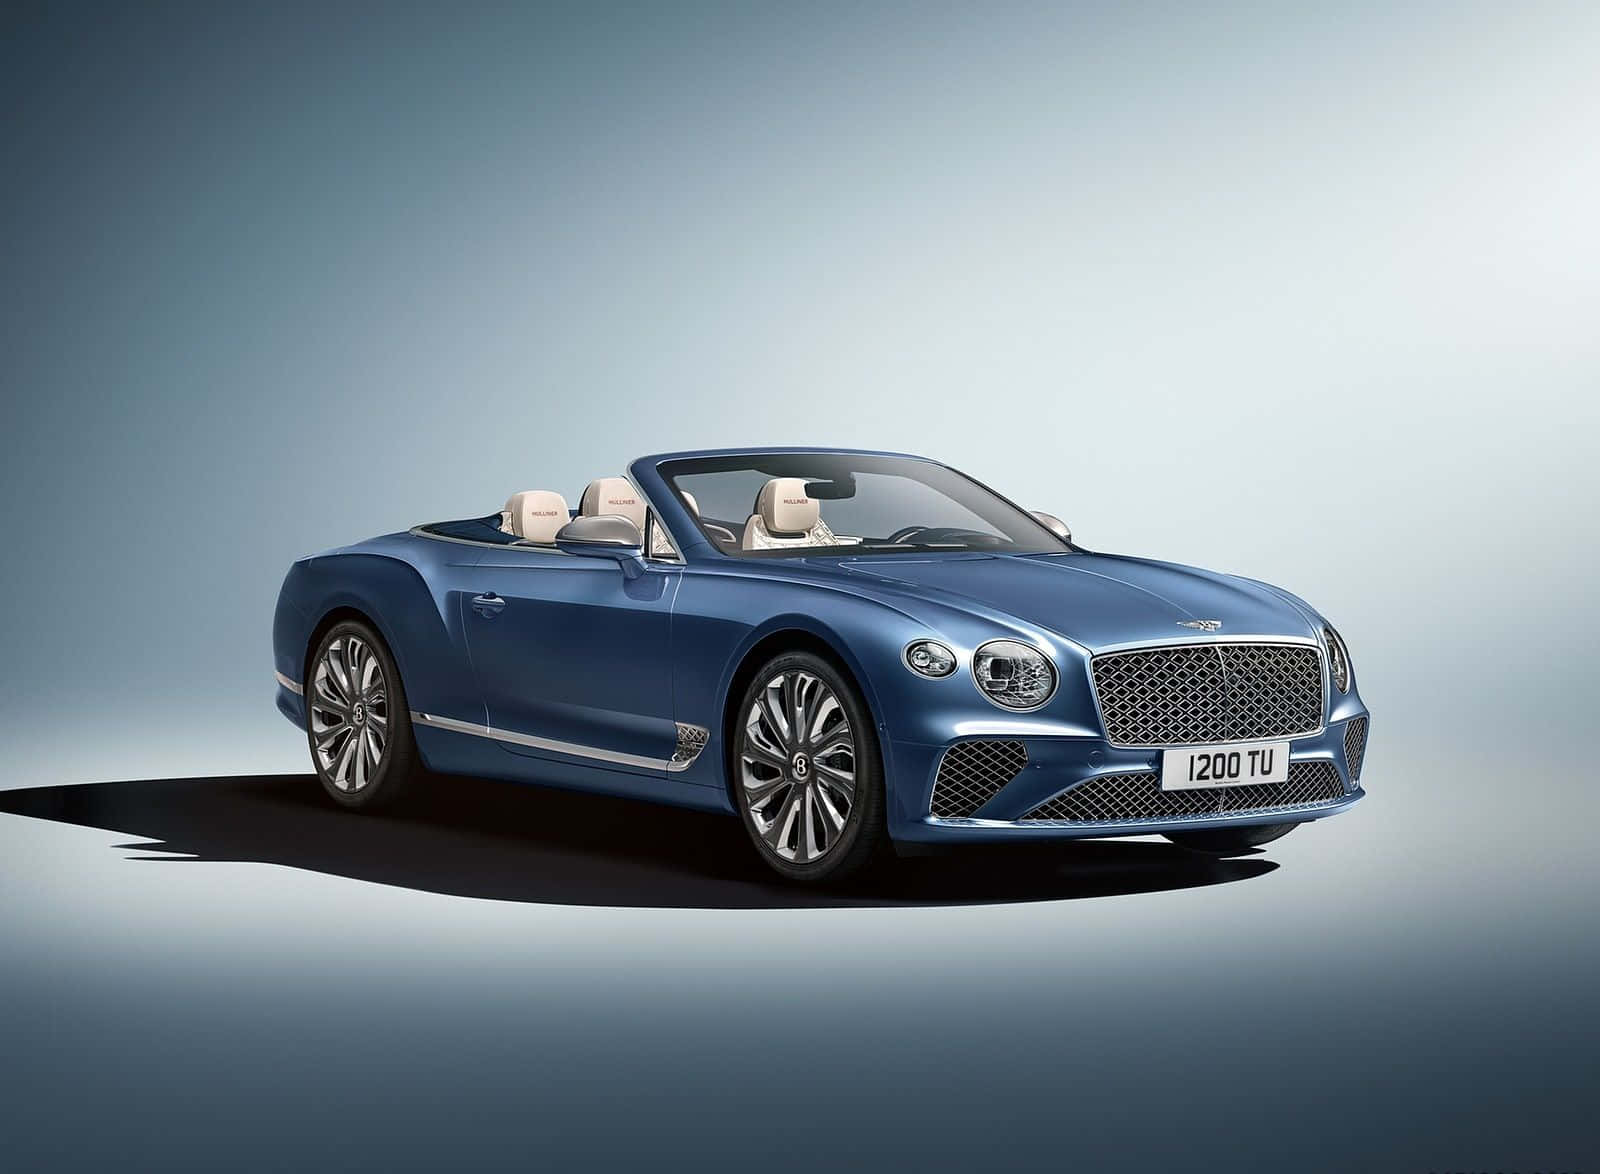 Erlebensie Luxus Und Geschwindigkeit Mit Dem Legendären Bentley.